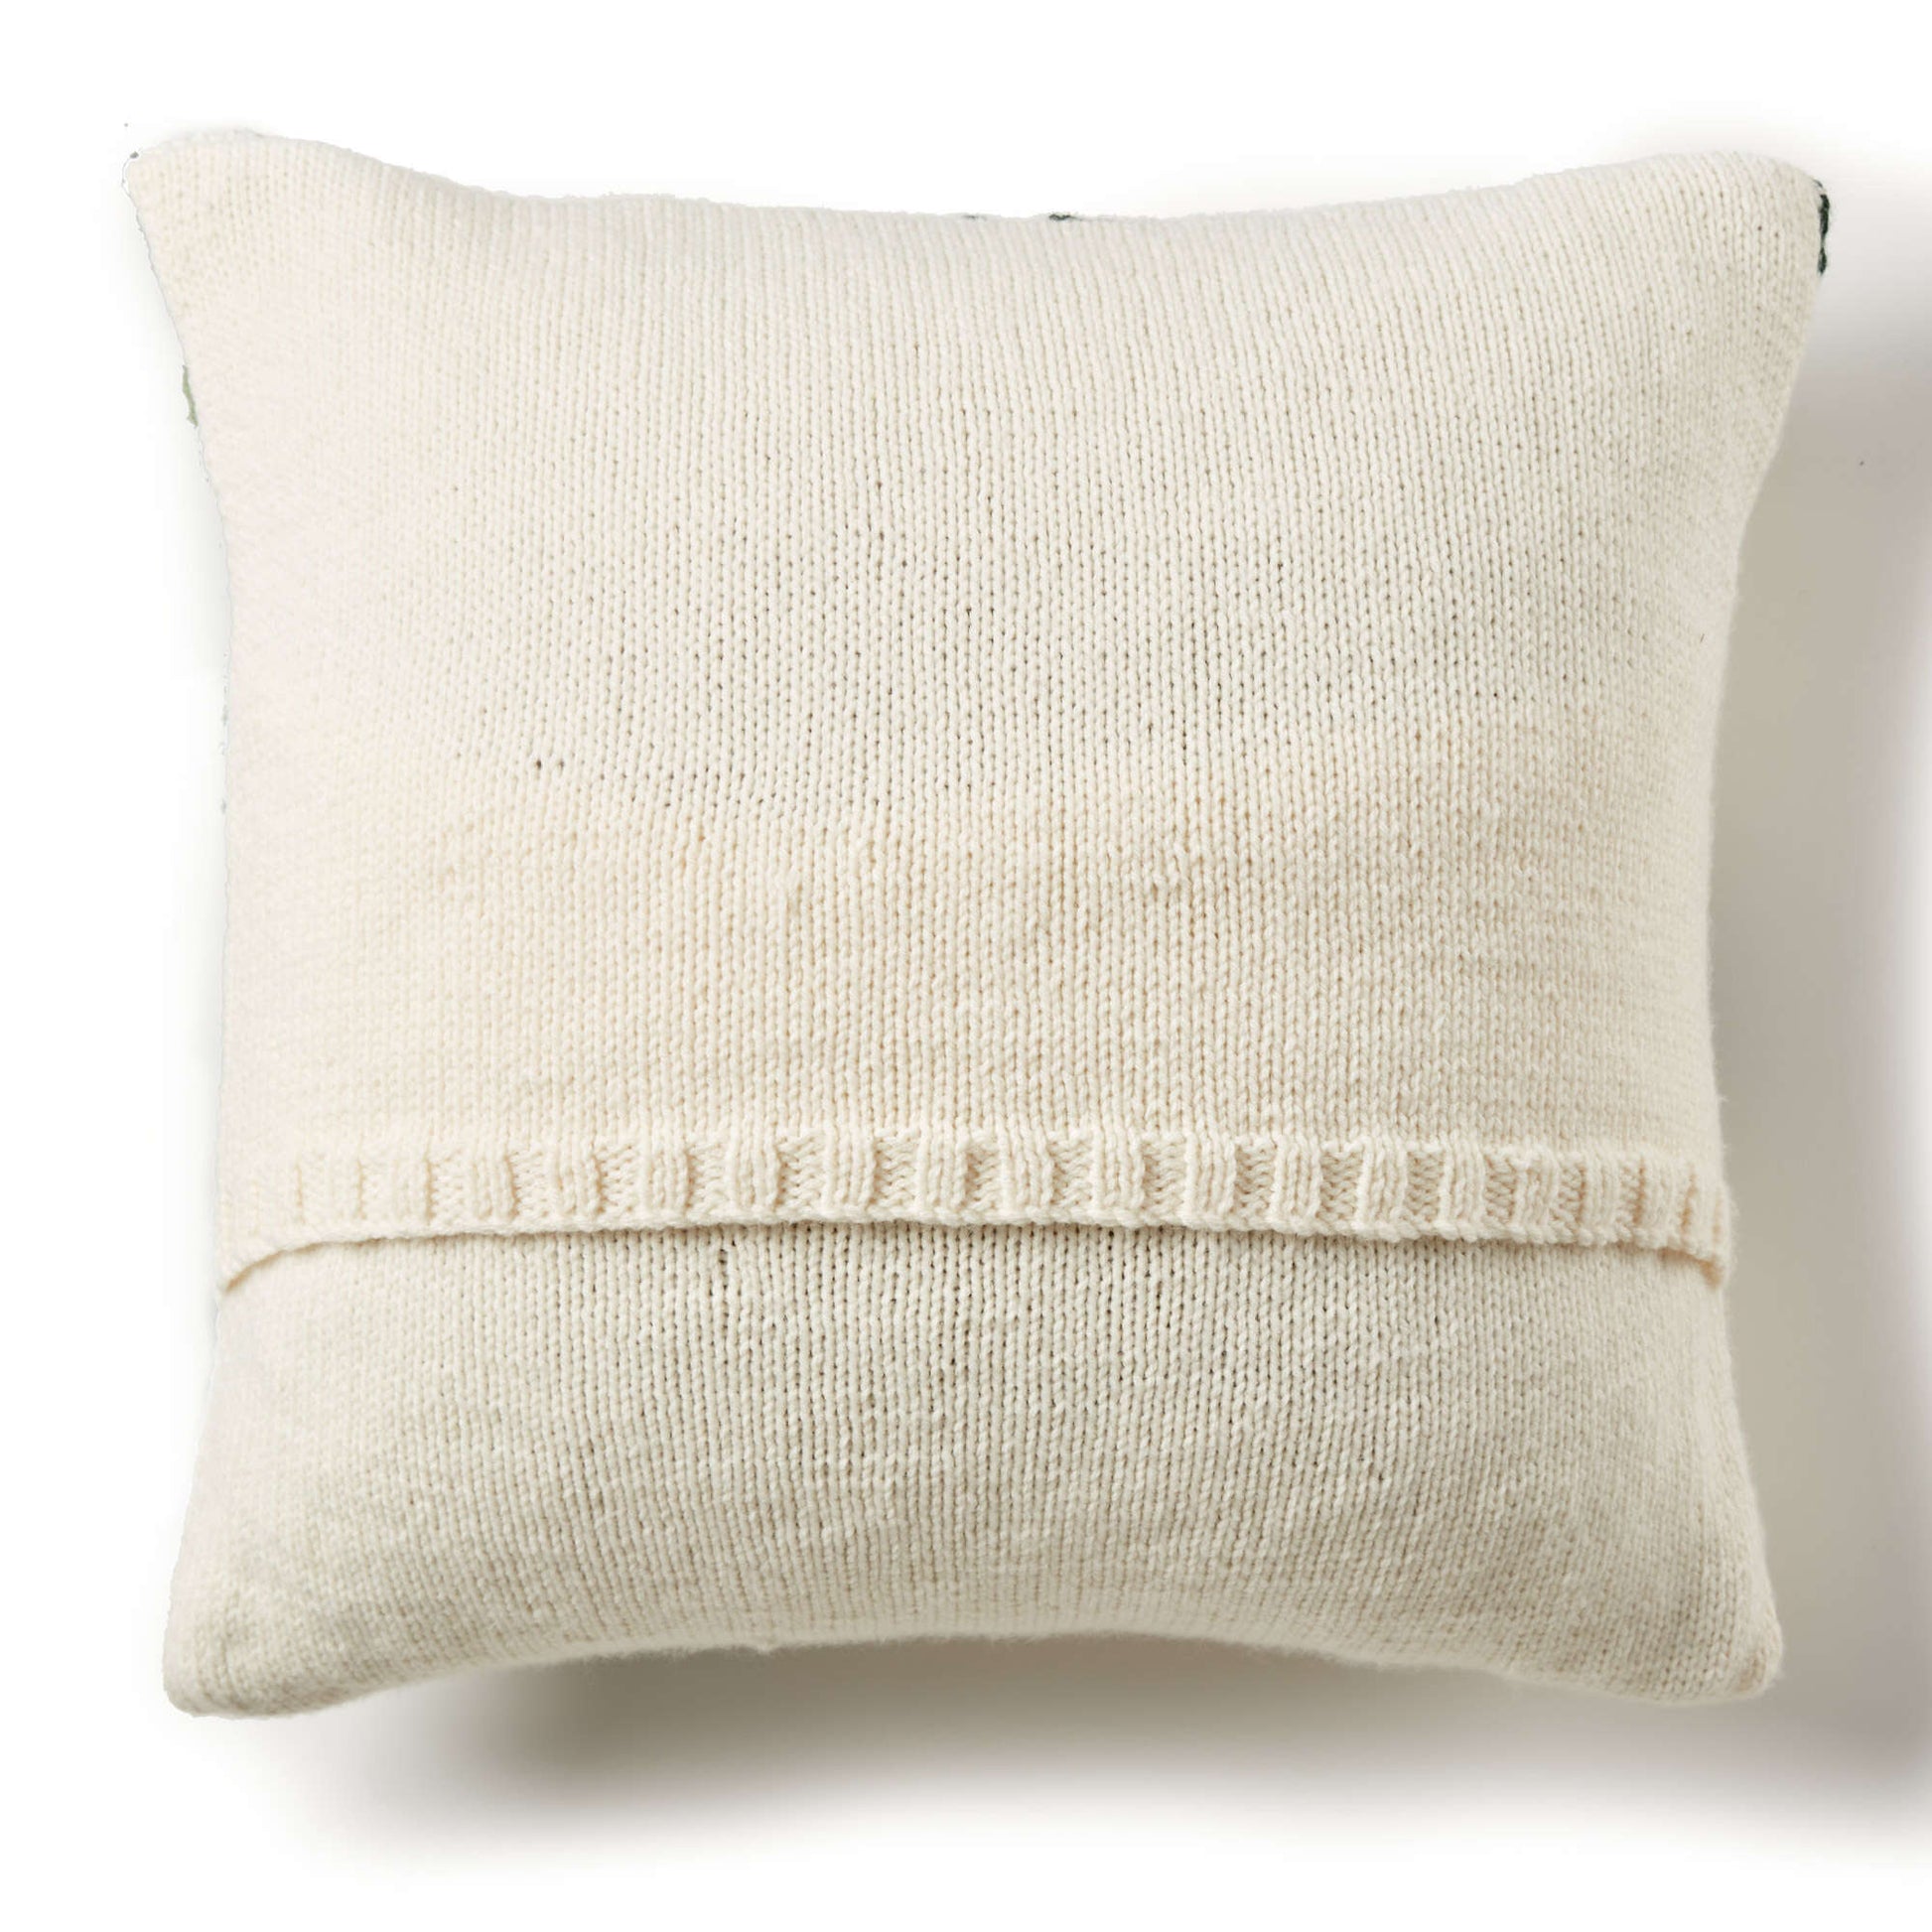 Free Bernat Tropical Leaf Knit Pillow Pattern